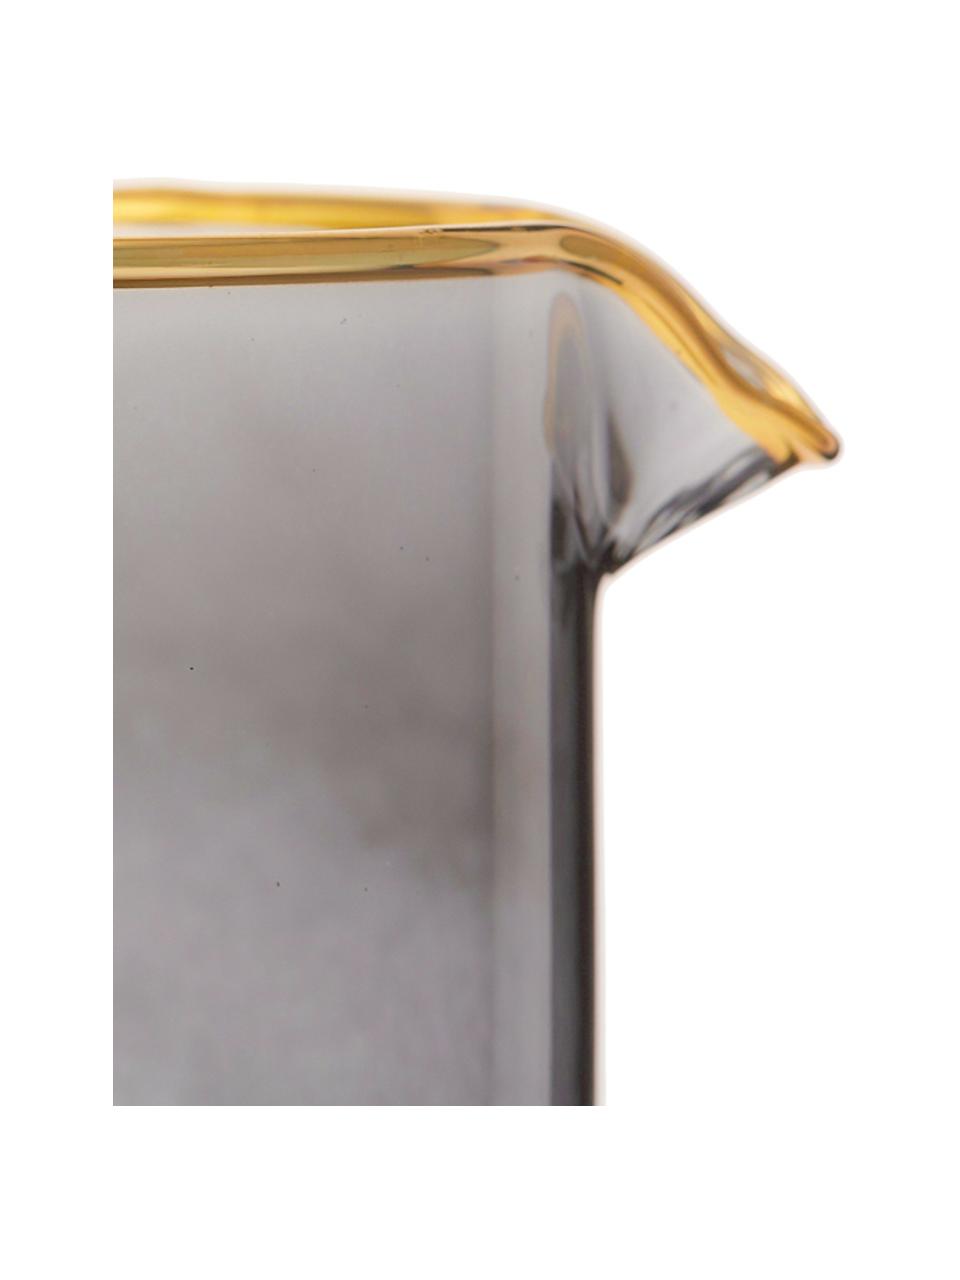 Krug Chloe in Graublau mit Goldrand, 1.6 L, Glas, Graublau, H 25 cm, 1.6 L